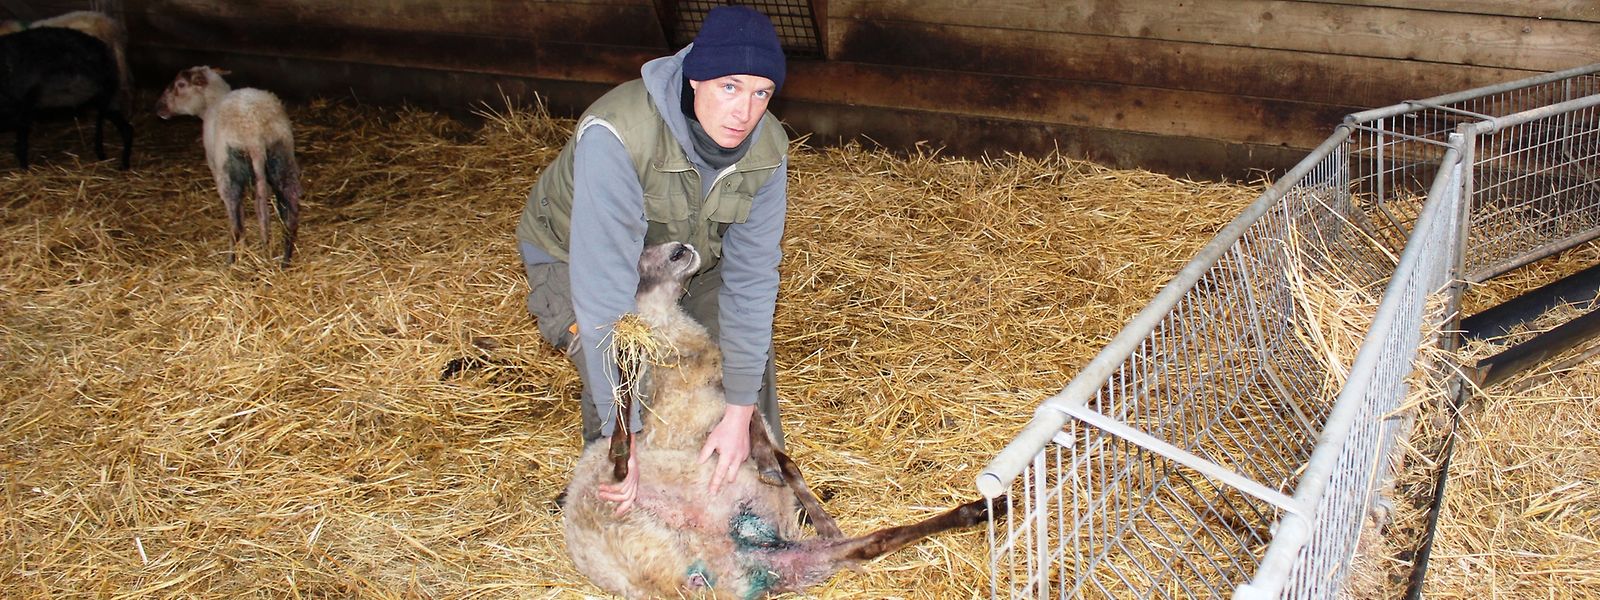 Les résultats des analyses effectuées sur les moutons de Stijn Vandyck seront connus dans six mois.